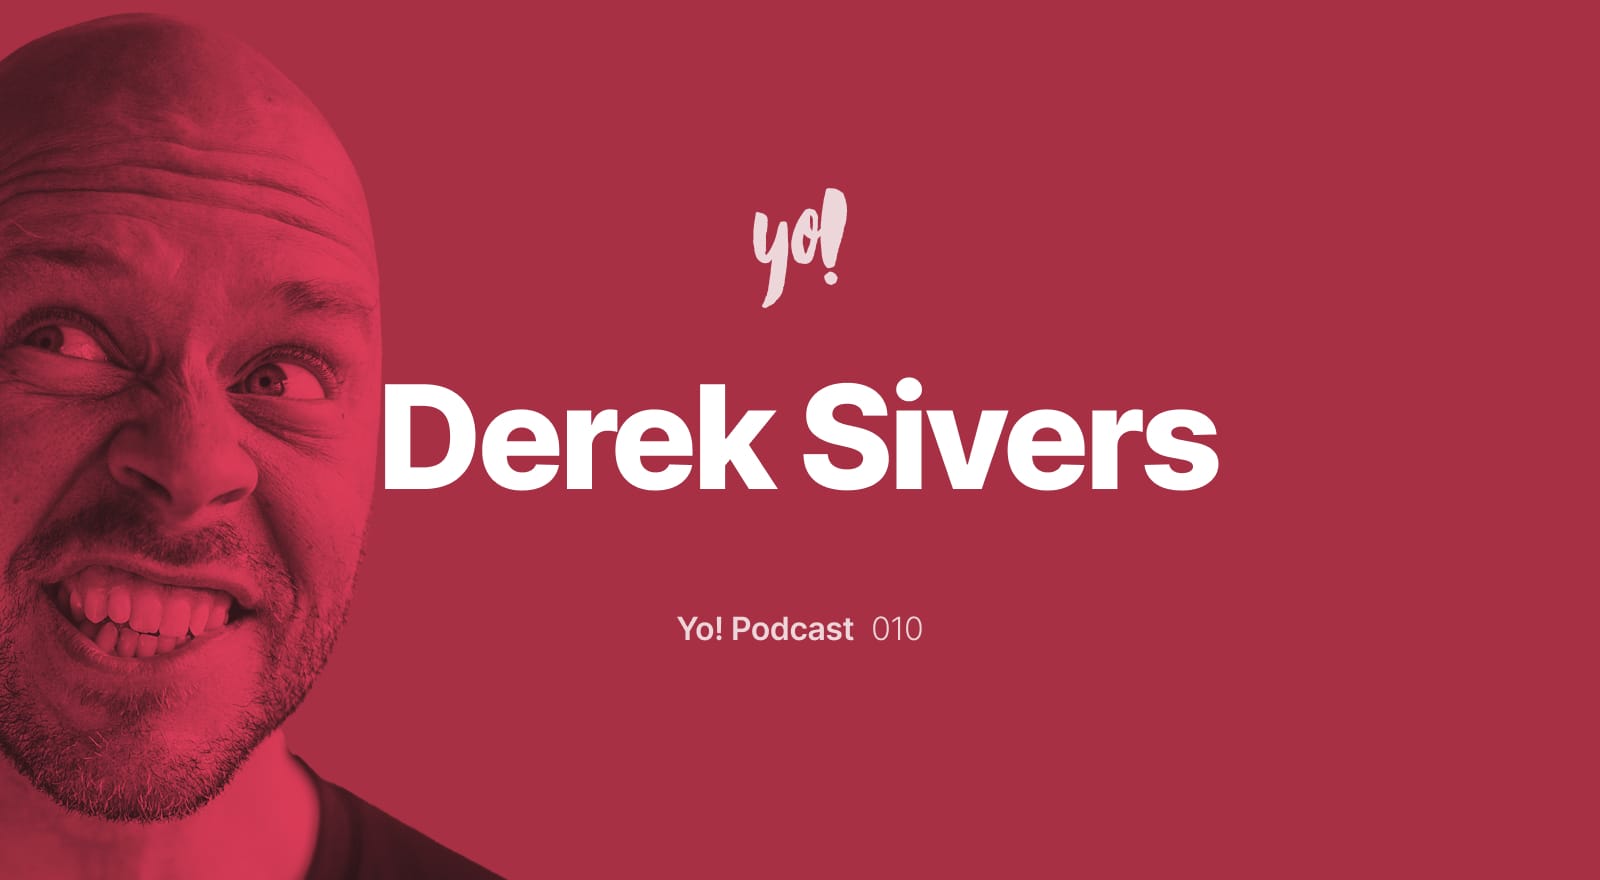 Yo! Podcast: Derek Sivers